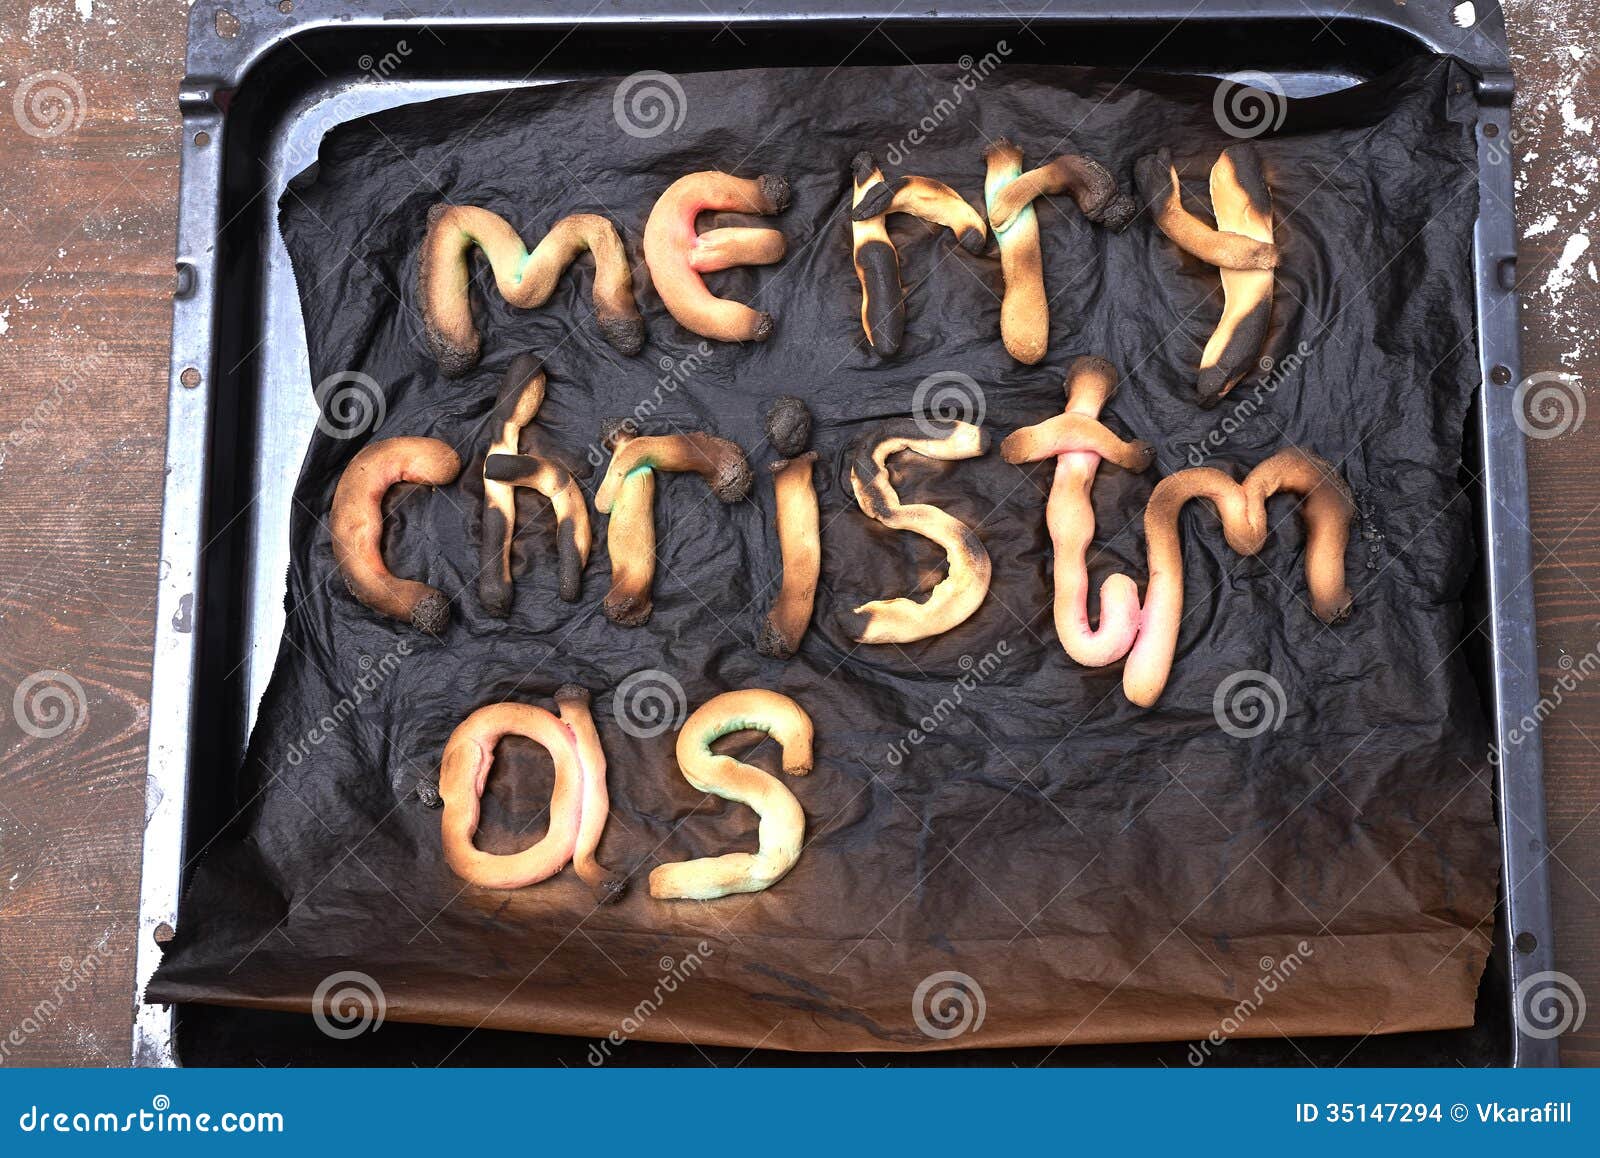 https://thumbs.dreamstime.com/z/merry-christmas-cookies-pan-burned-up-35147294.jpg